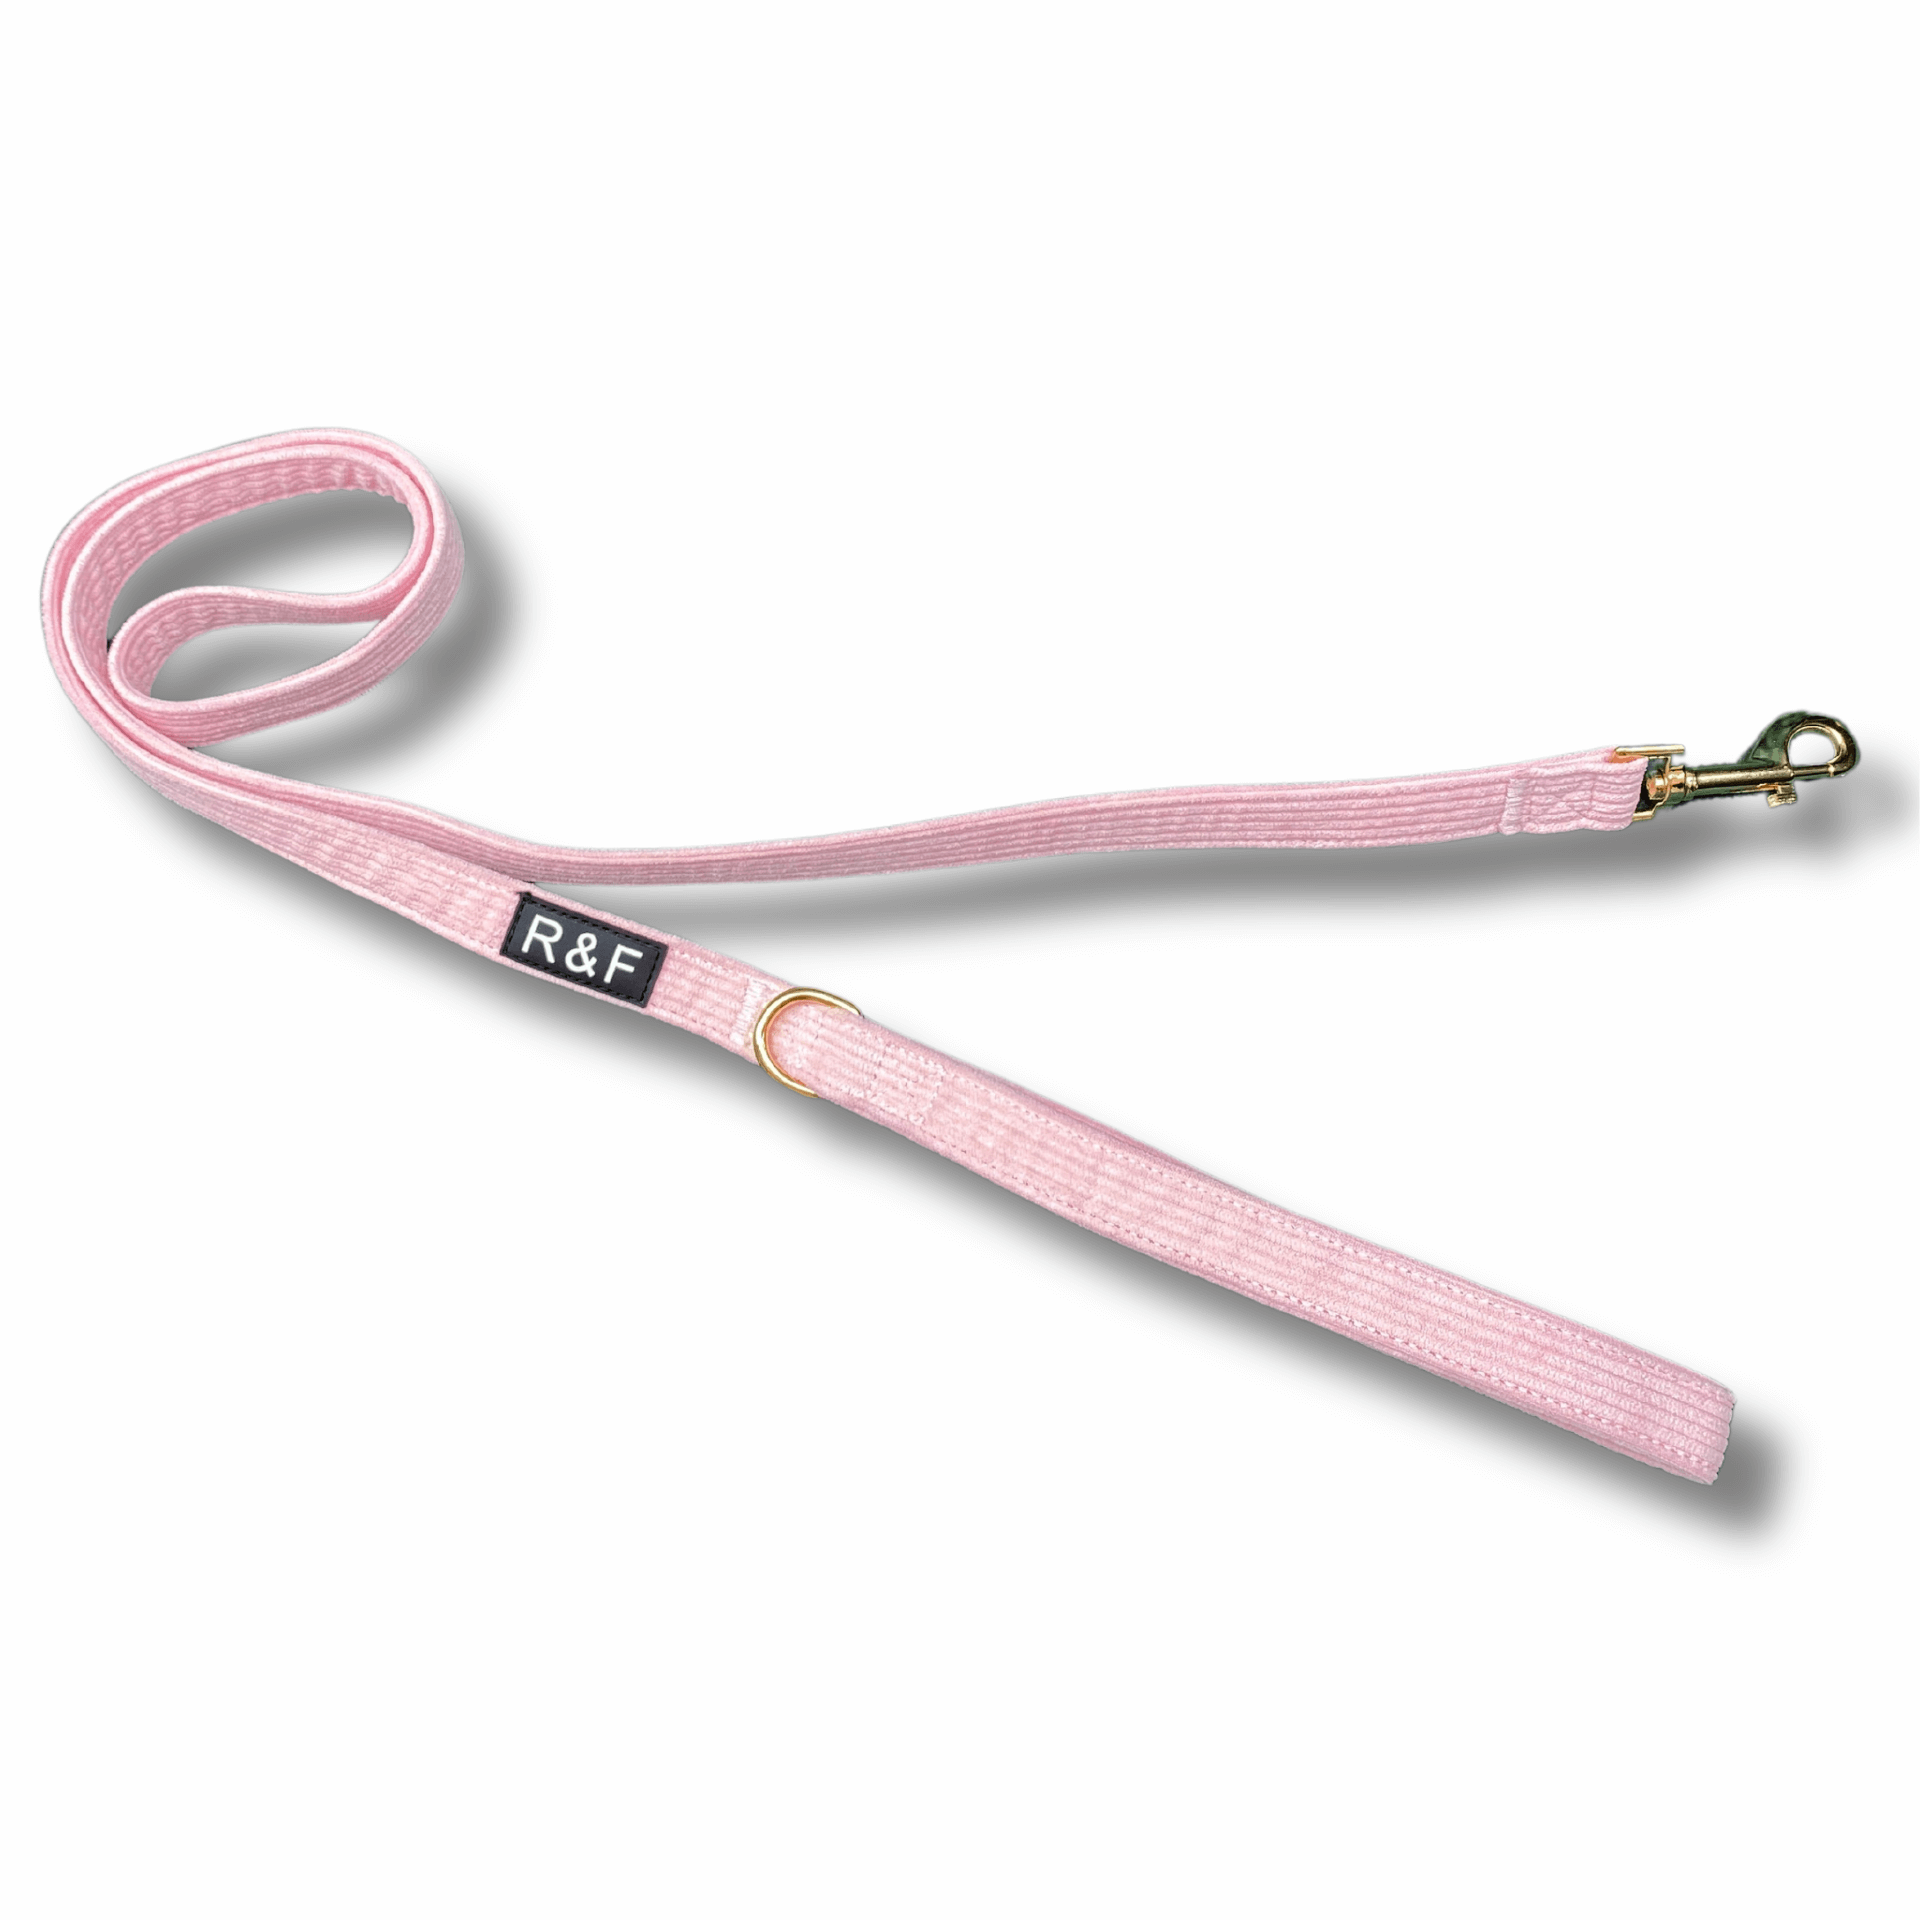 Pink dog harness, leash and poo bag holder set